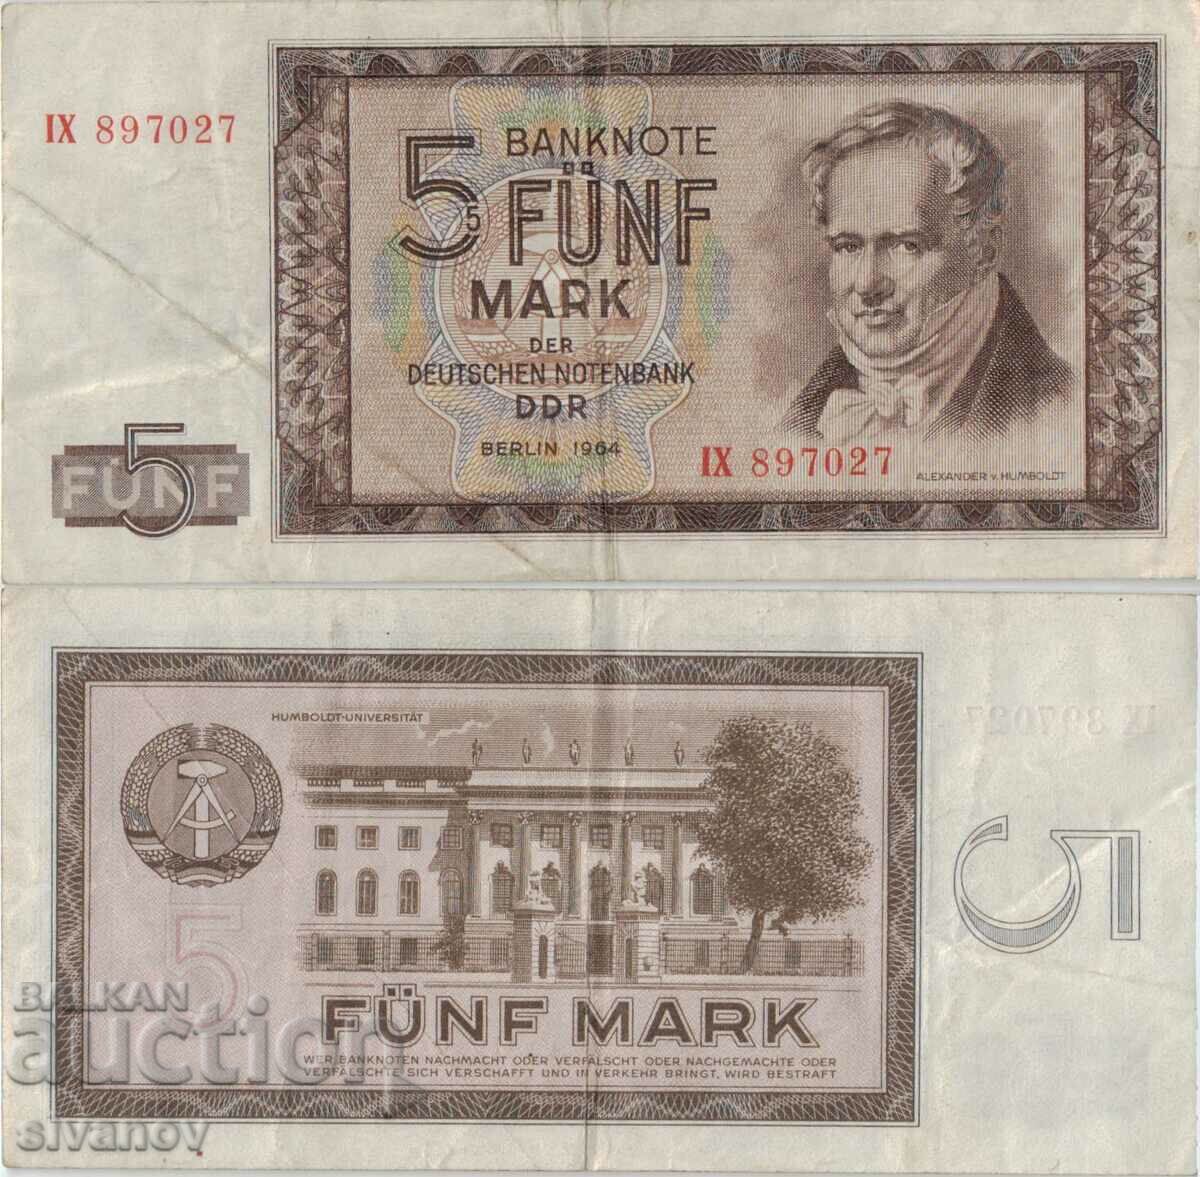 Γερμανία GDR 5 γραμματόσημα 1964 έτος #5076